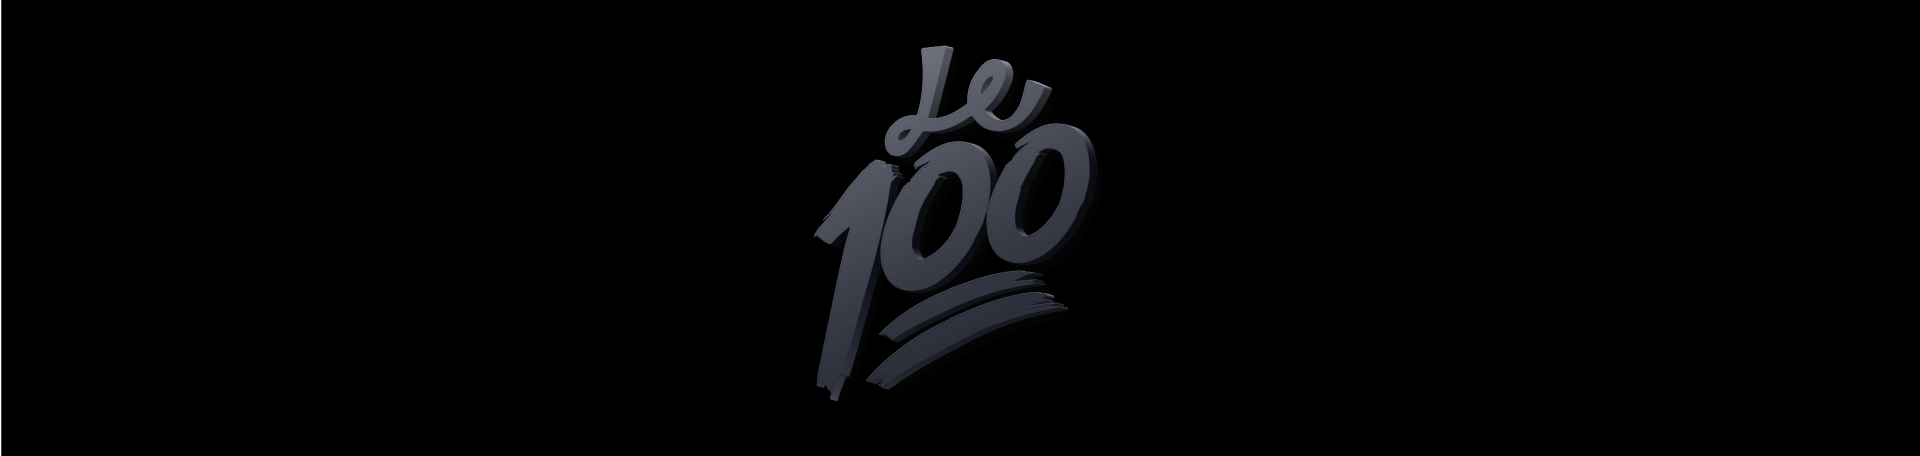 Le 100